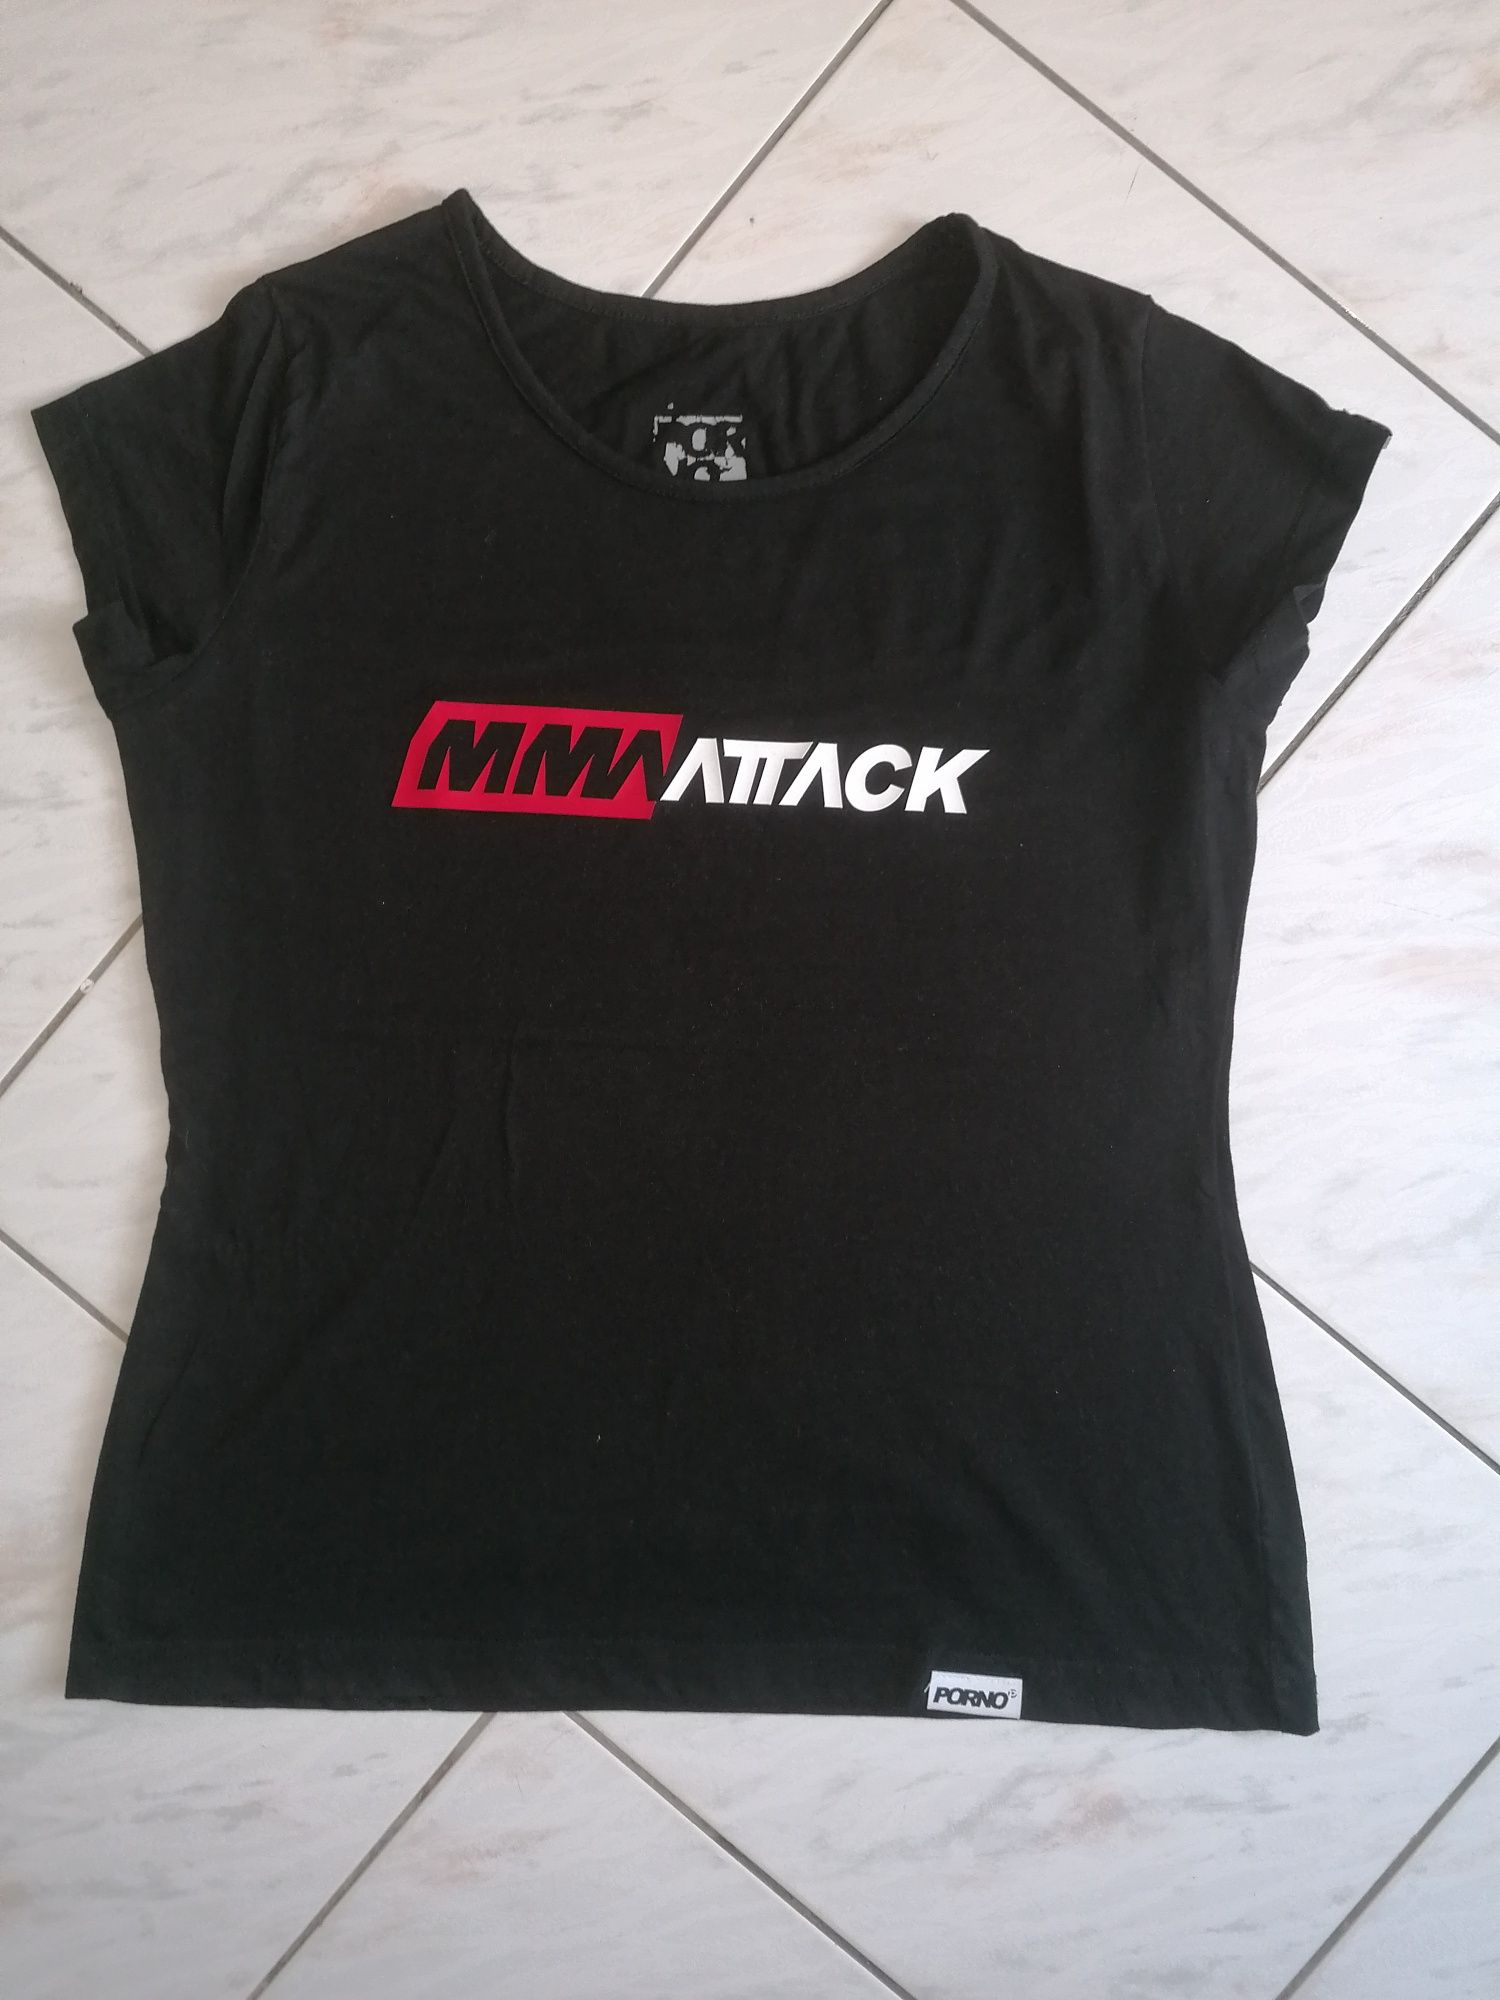 T-shirt Damski firmy Porno z napisem MMAAttack w rozm L